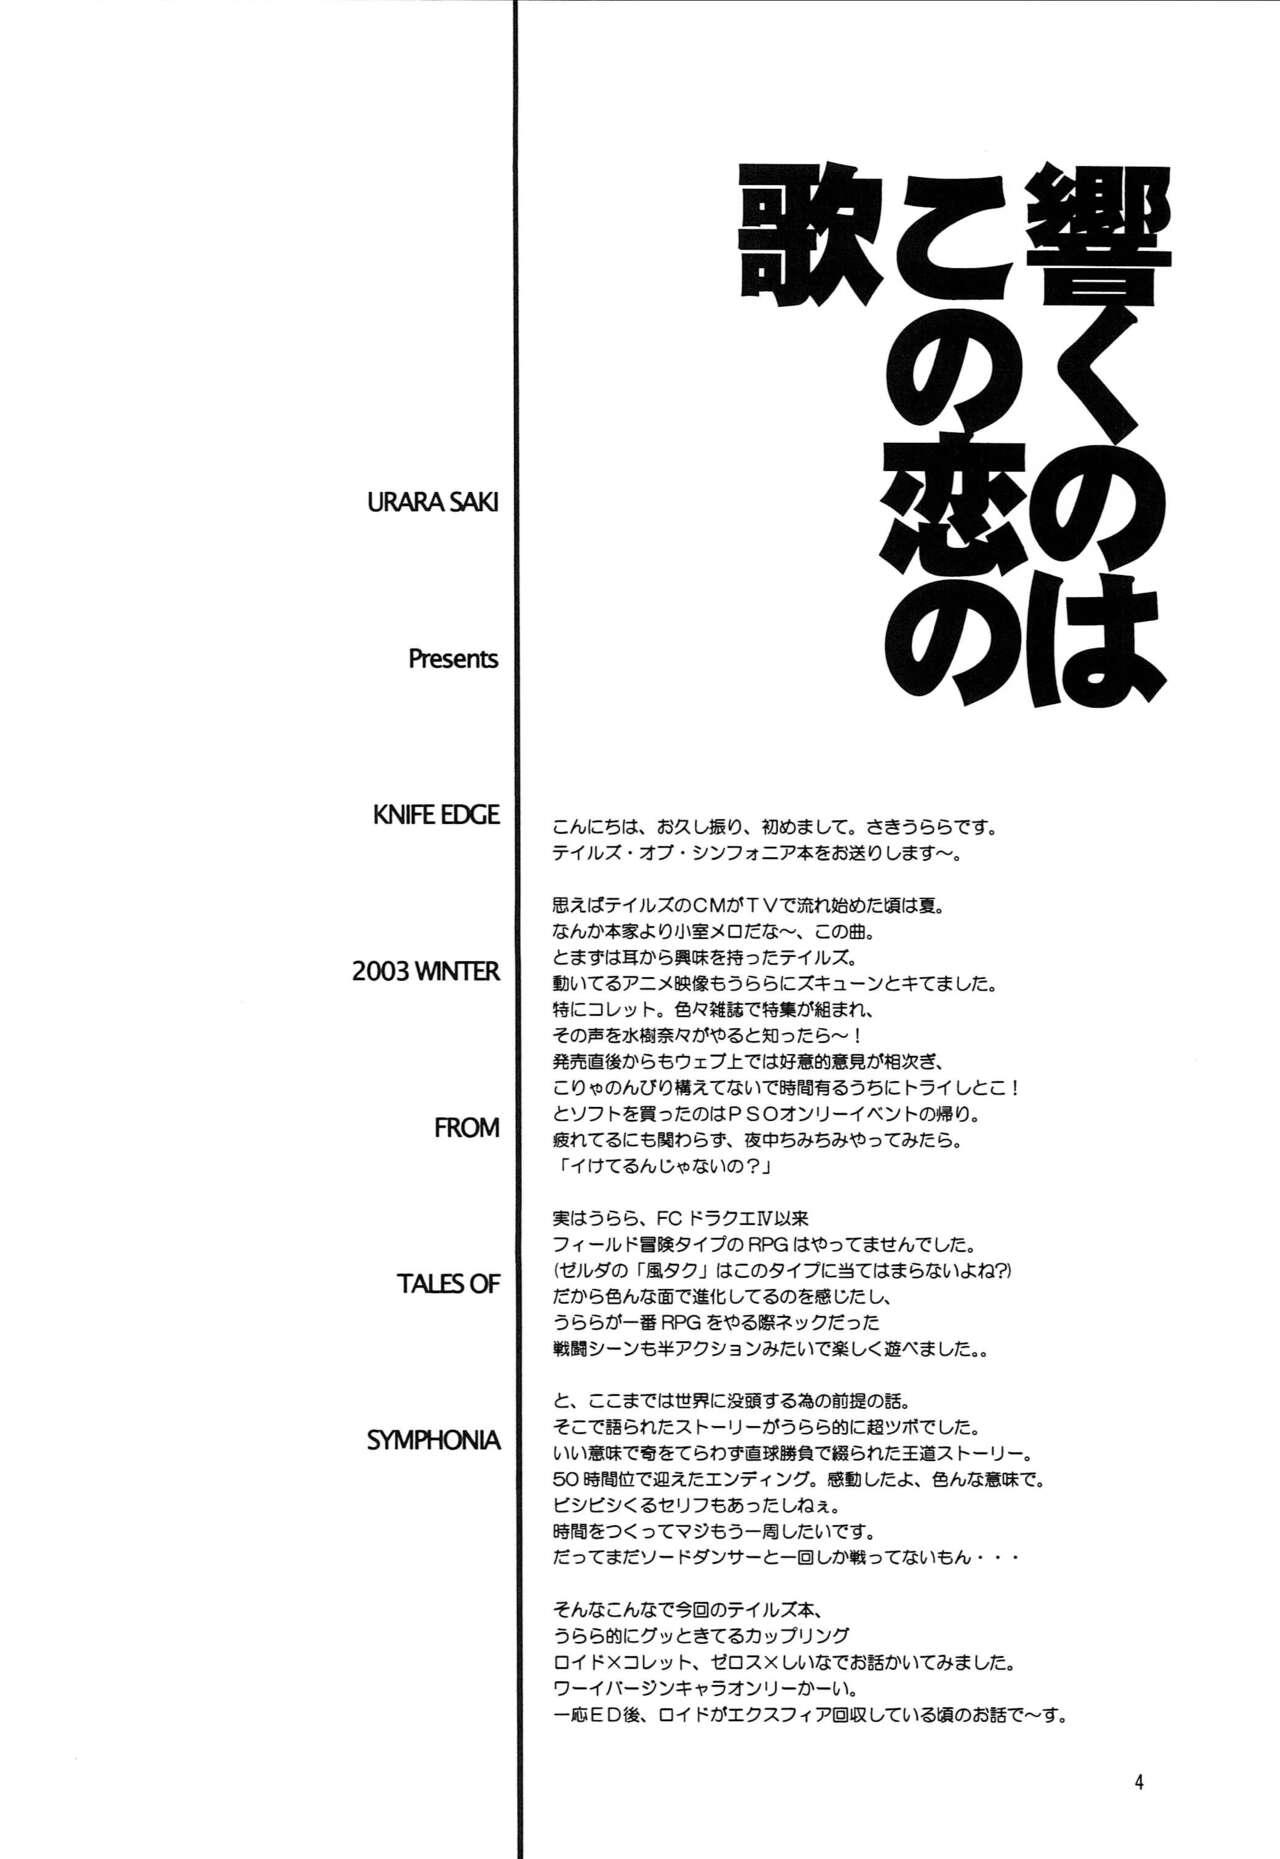 Free Fuck Hibiku no wa, Kono Koi no Uta - Tales of symphonia Married - Page 3